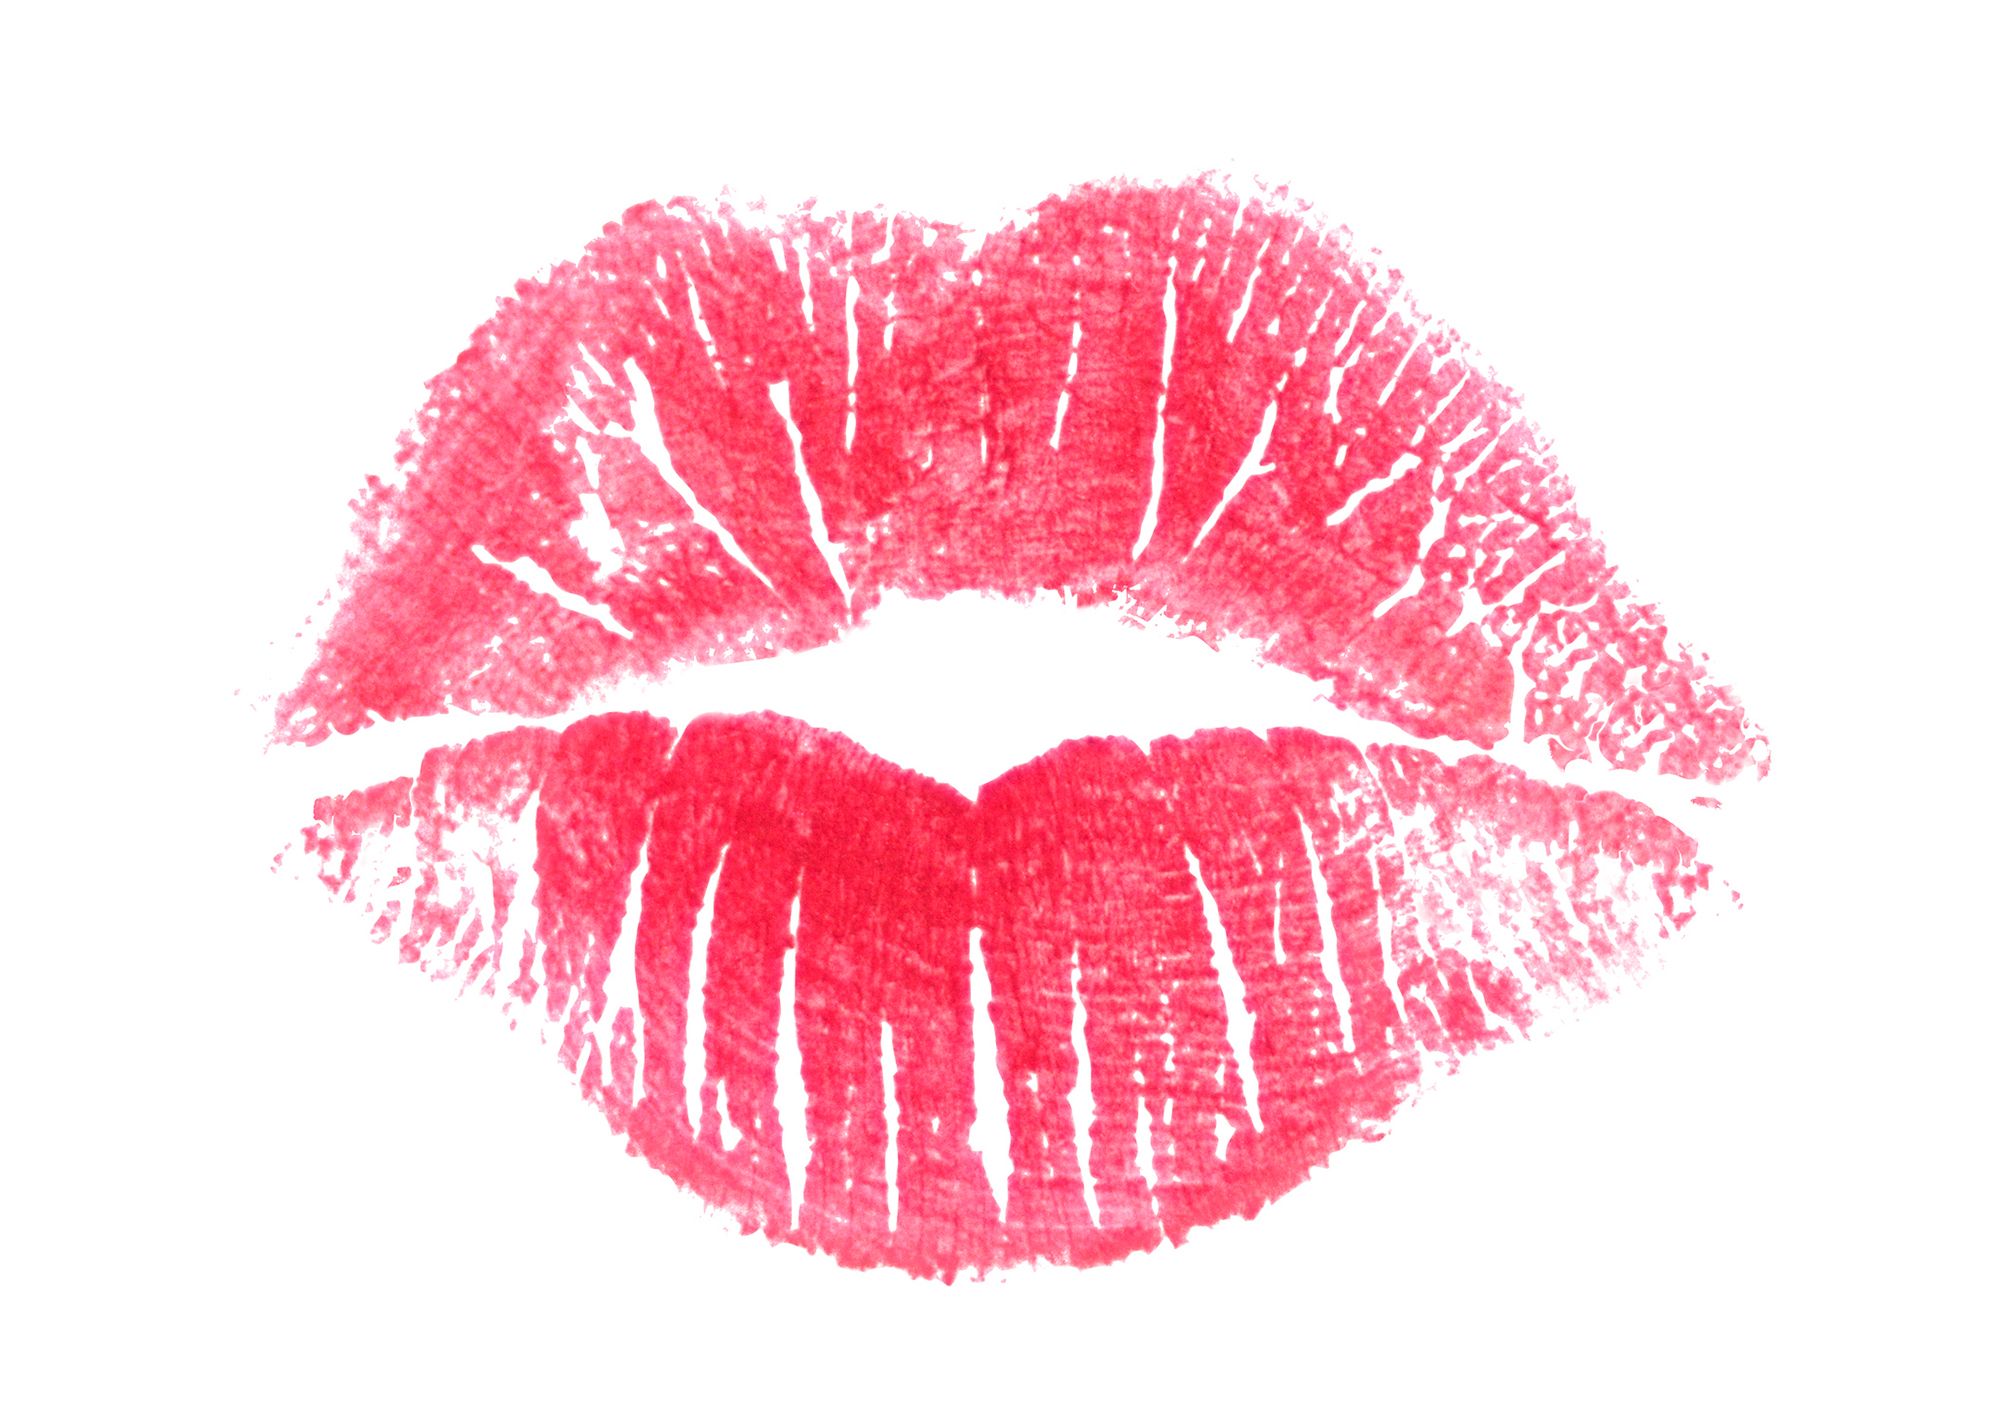 Lippenstift-Abdruck auf weißem Hintergrund